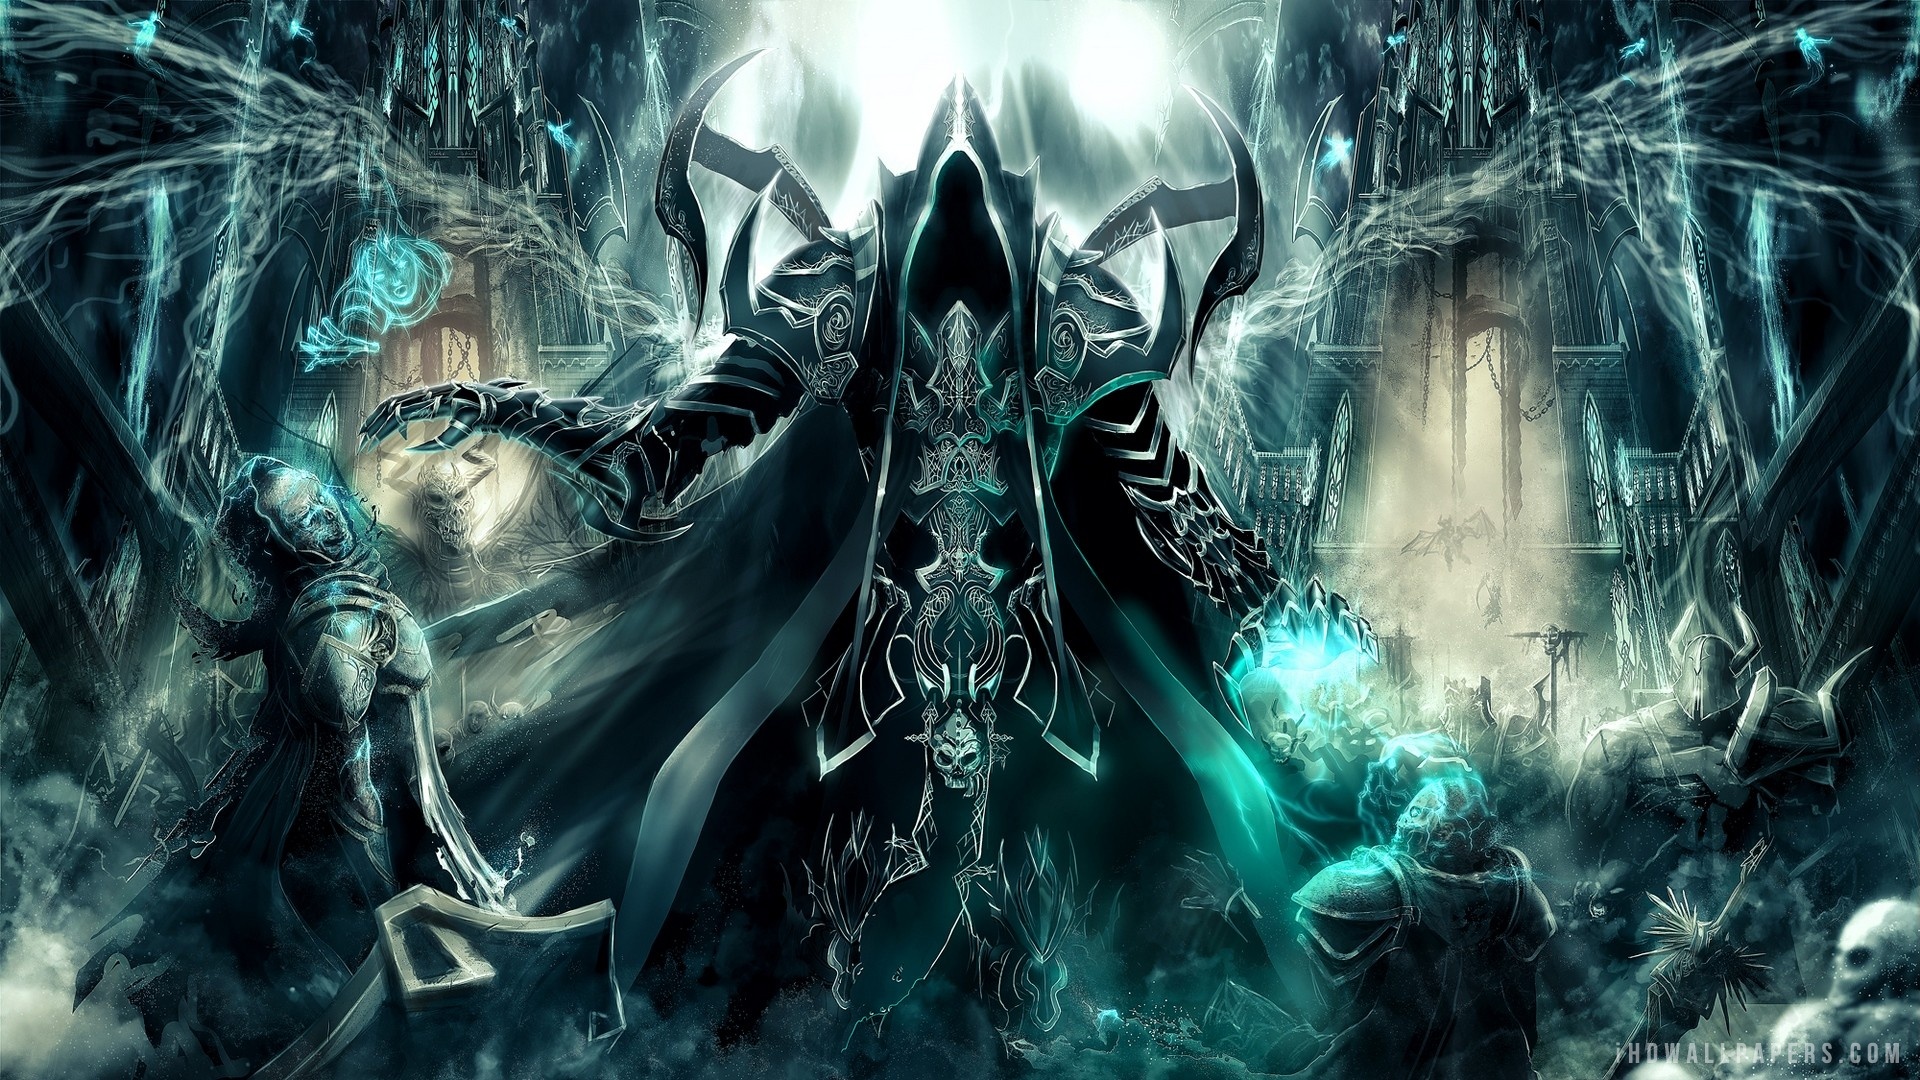 Diablo III Reaper Of Souls Malthael HD Wallpaper   iHD Wallpapers 1920x1080